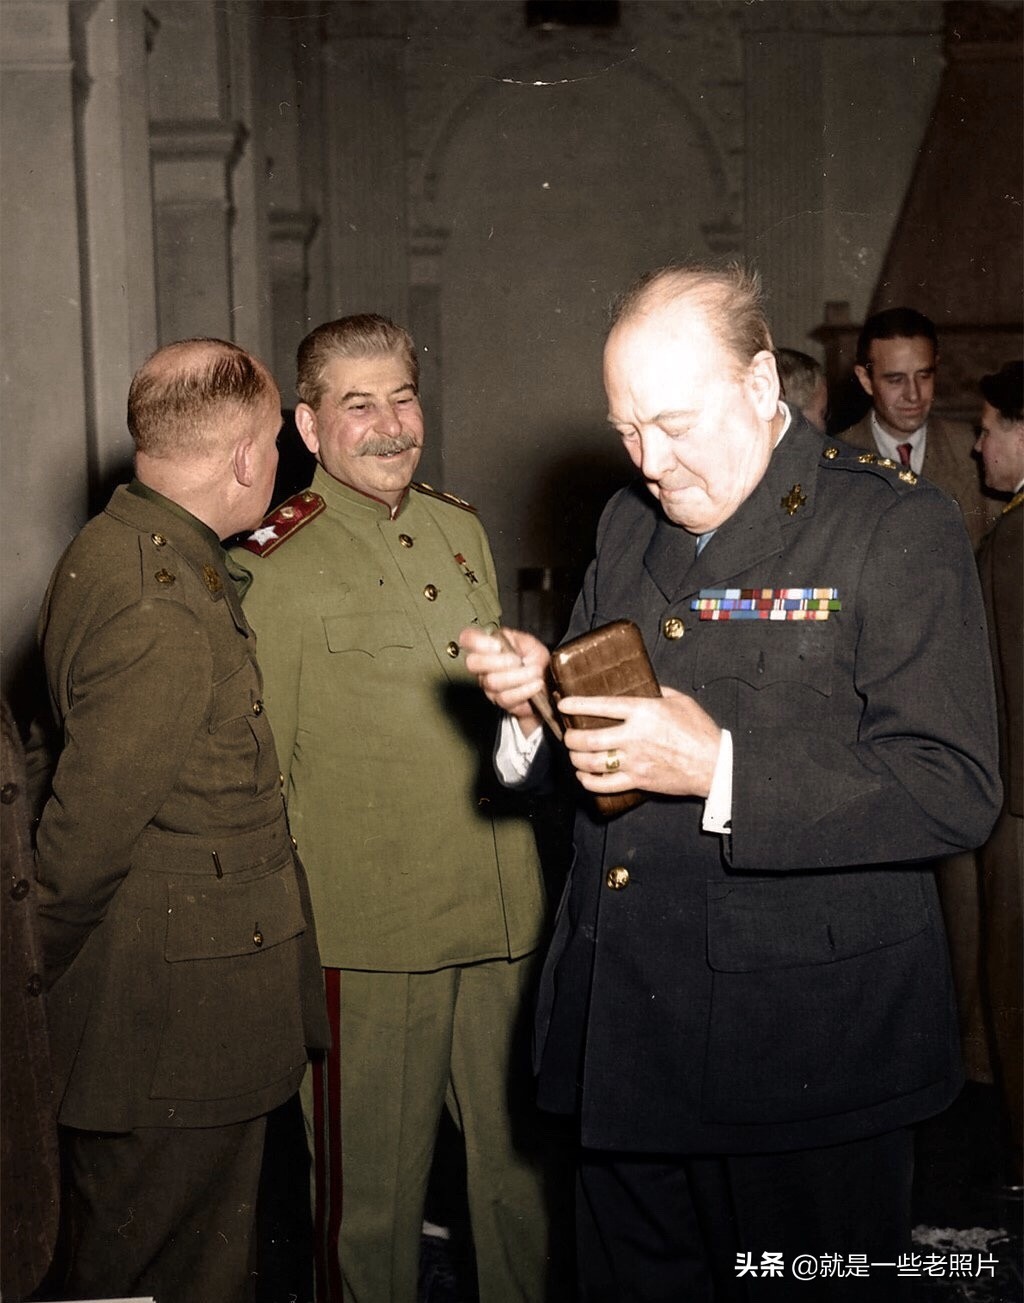 1945年5月4日在卢内堡德国投降代表团的高级成员,汉斯·乔治